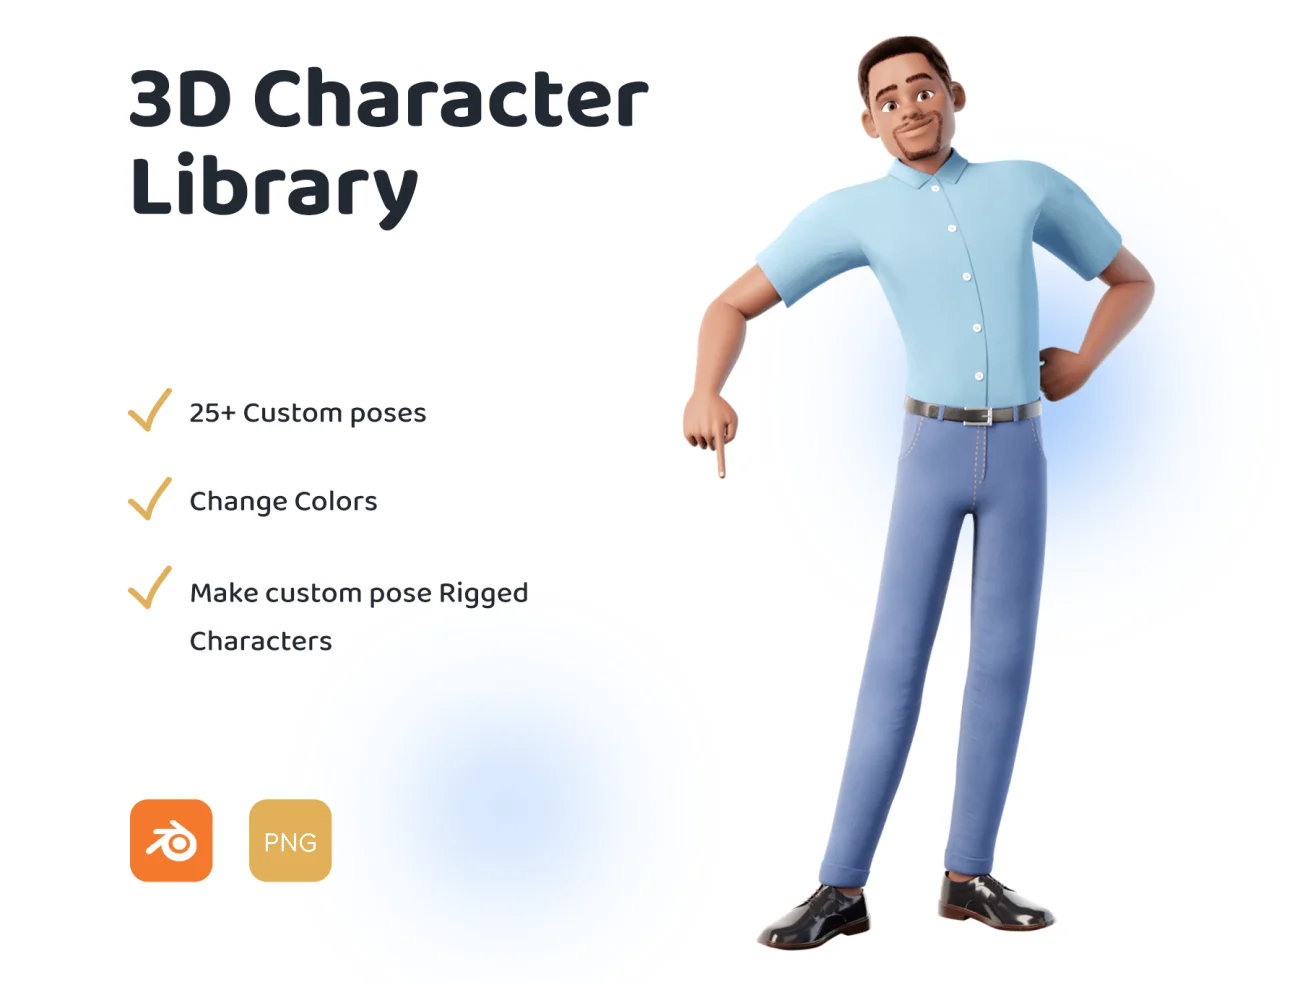 20款男性形象3D动画插图库 3D Male Character Pose Library Pack插图1